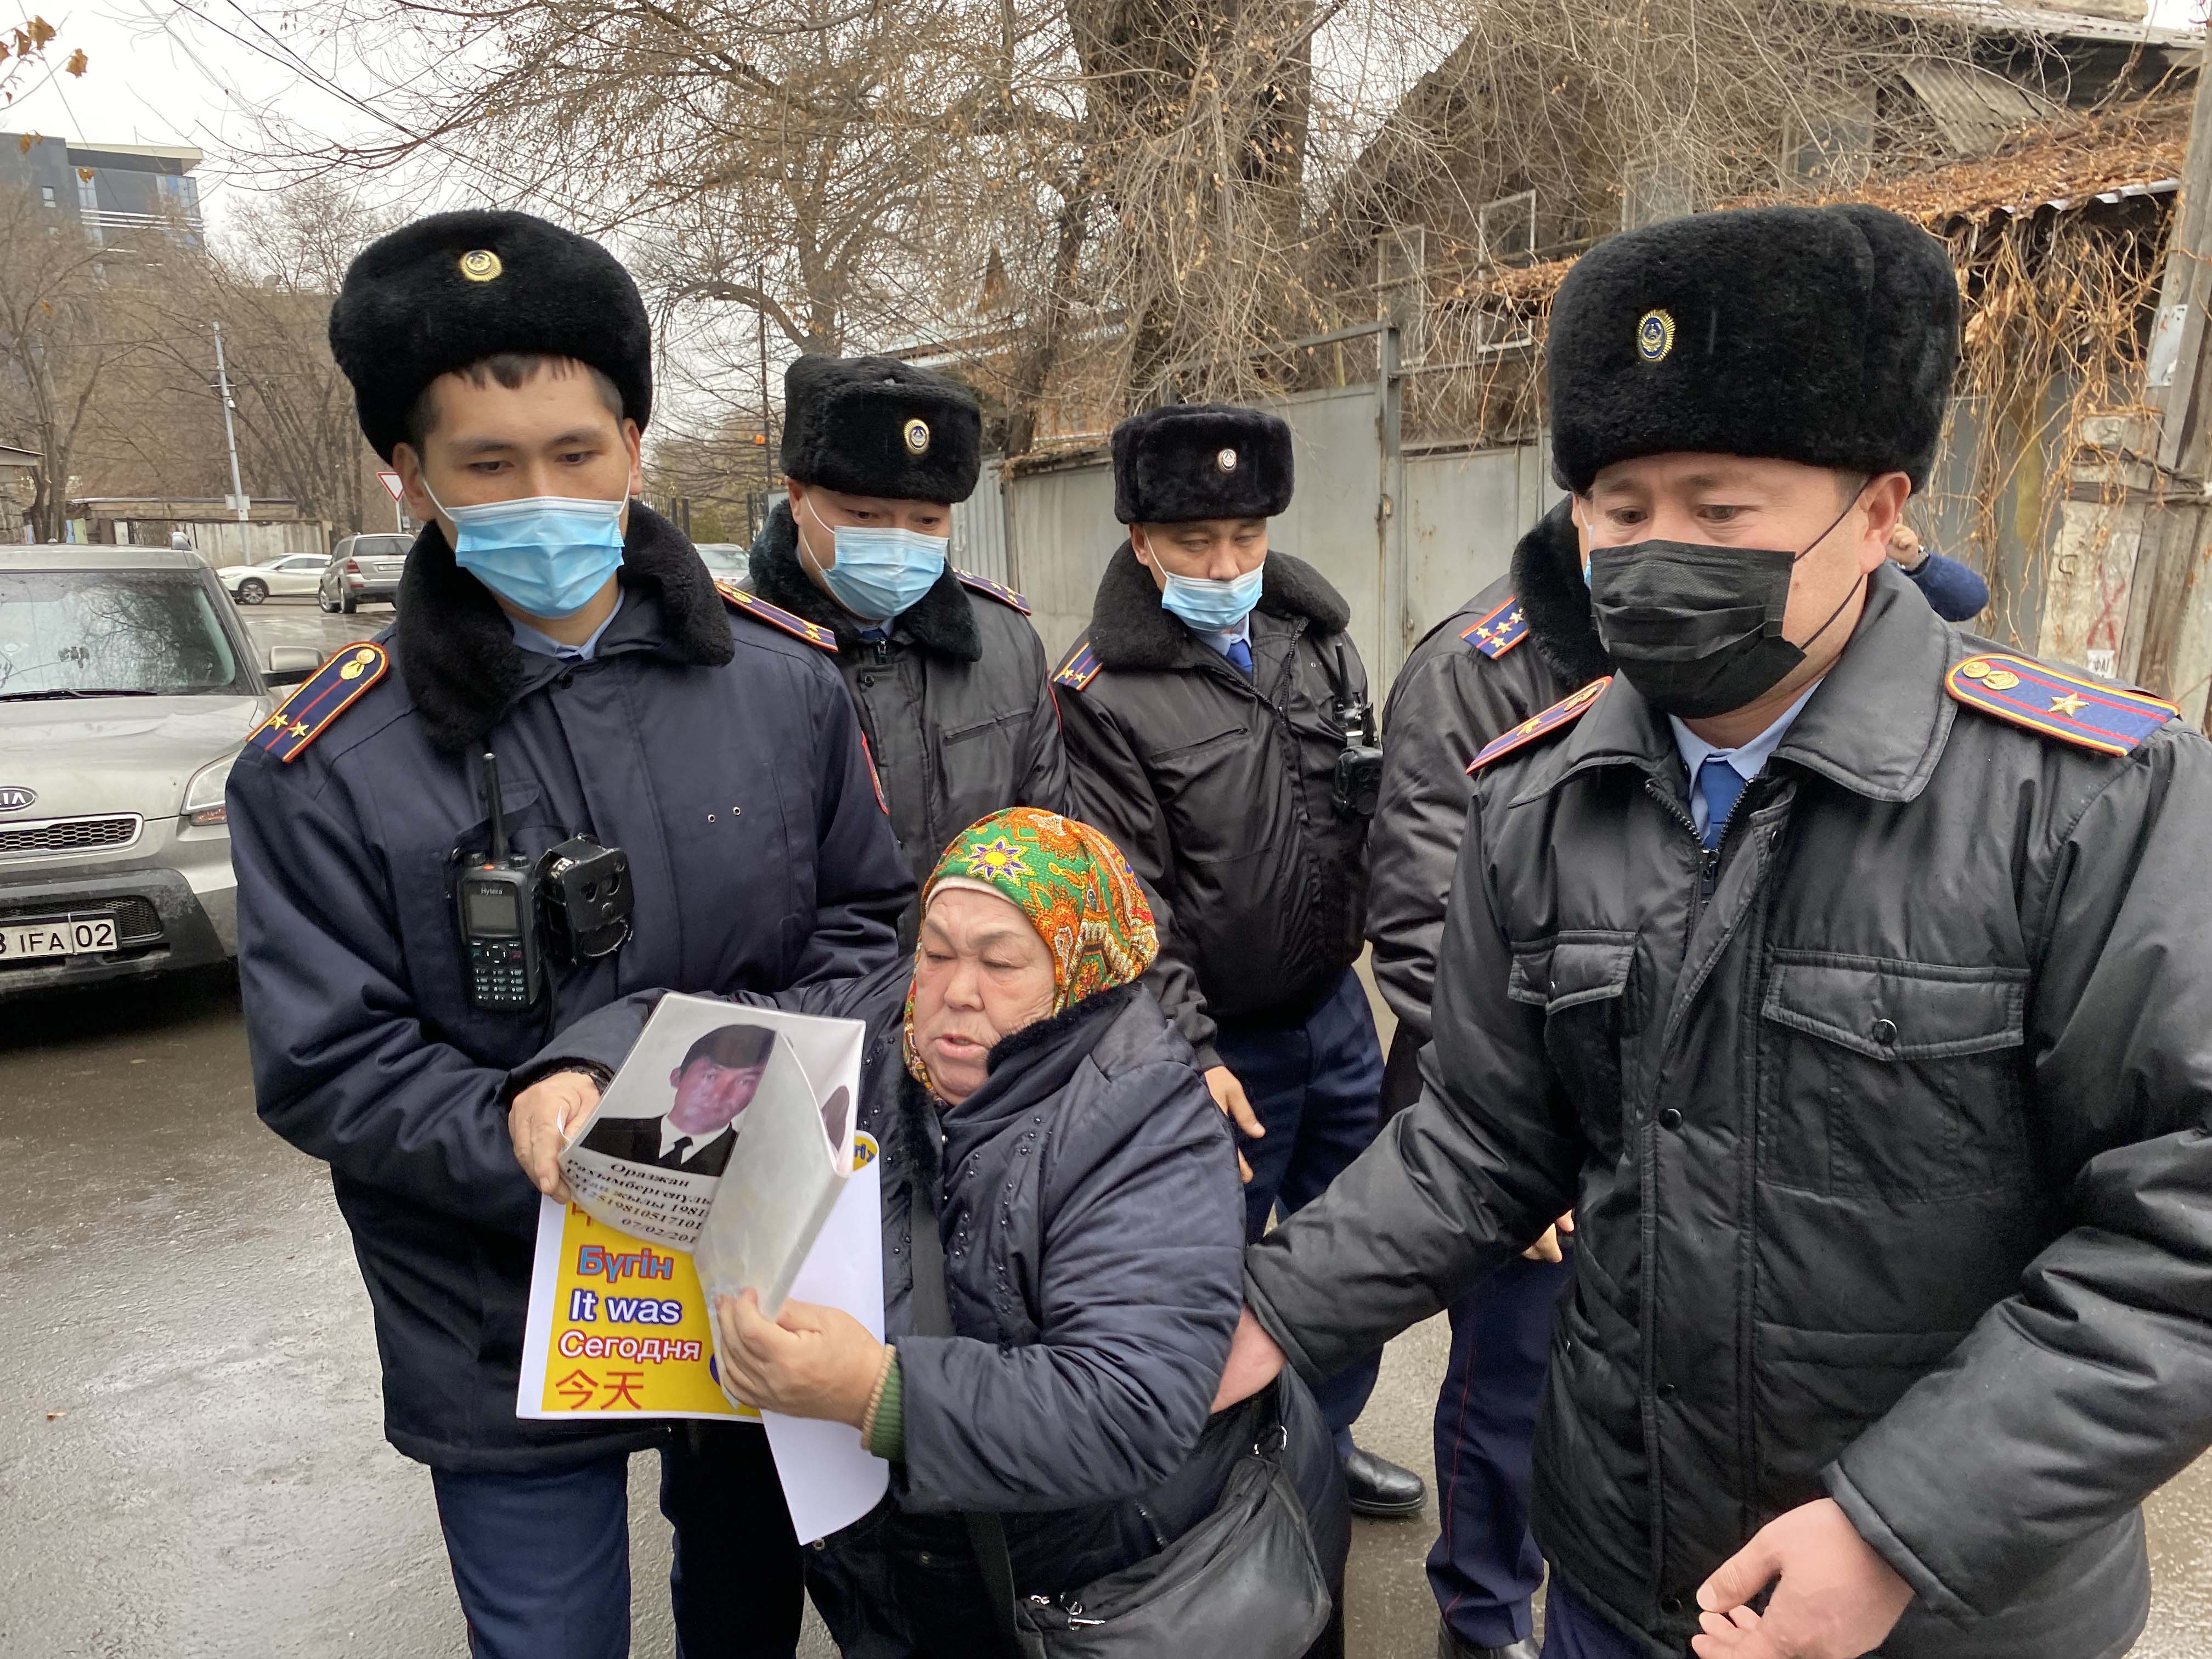 Kazakhstan: Protect Human Rights During Crisis